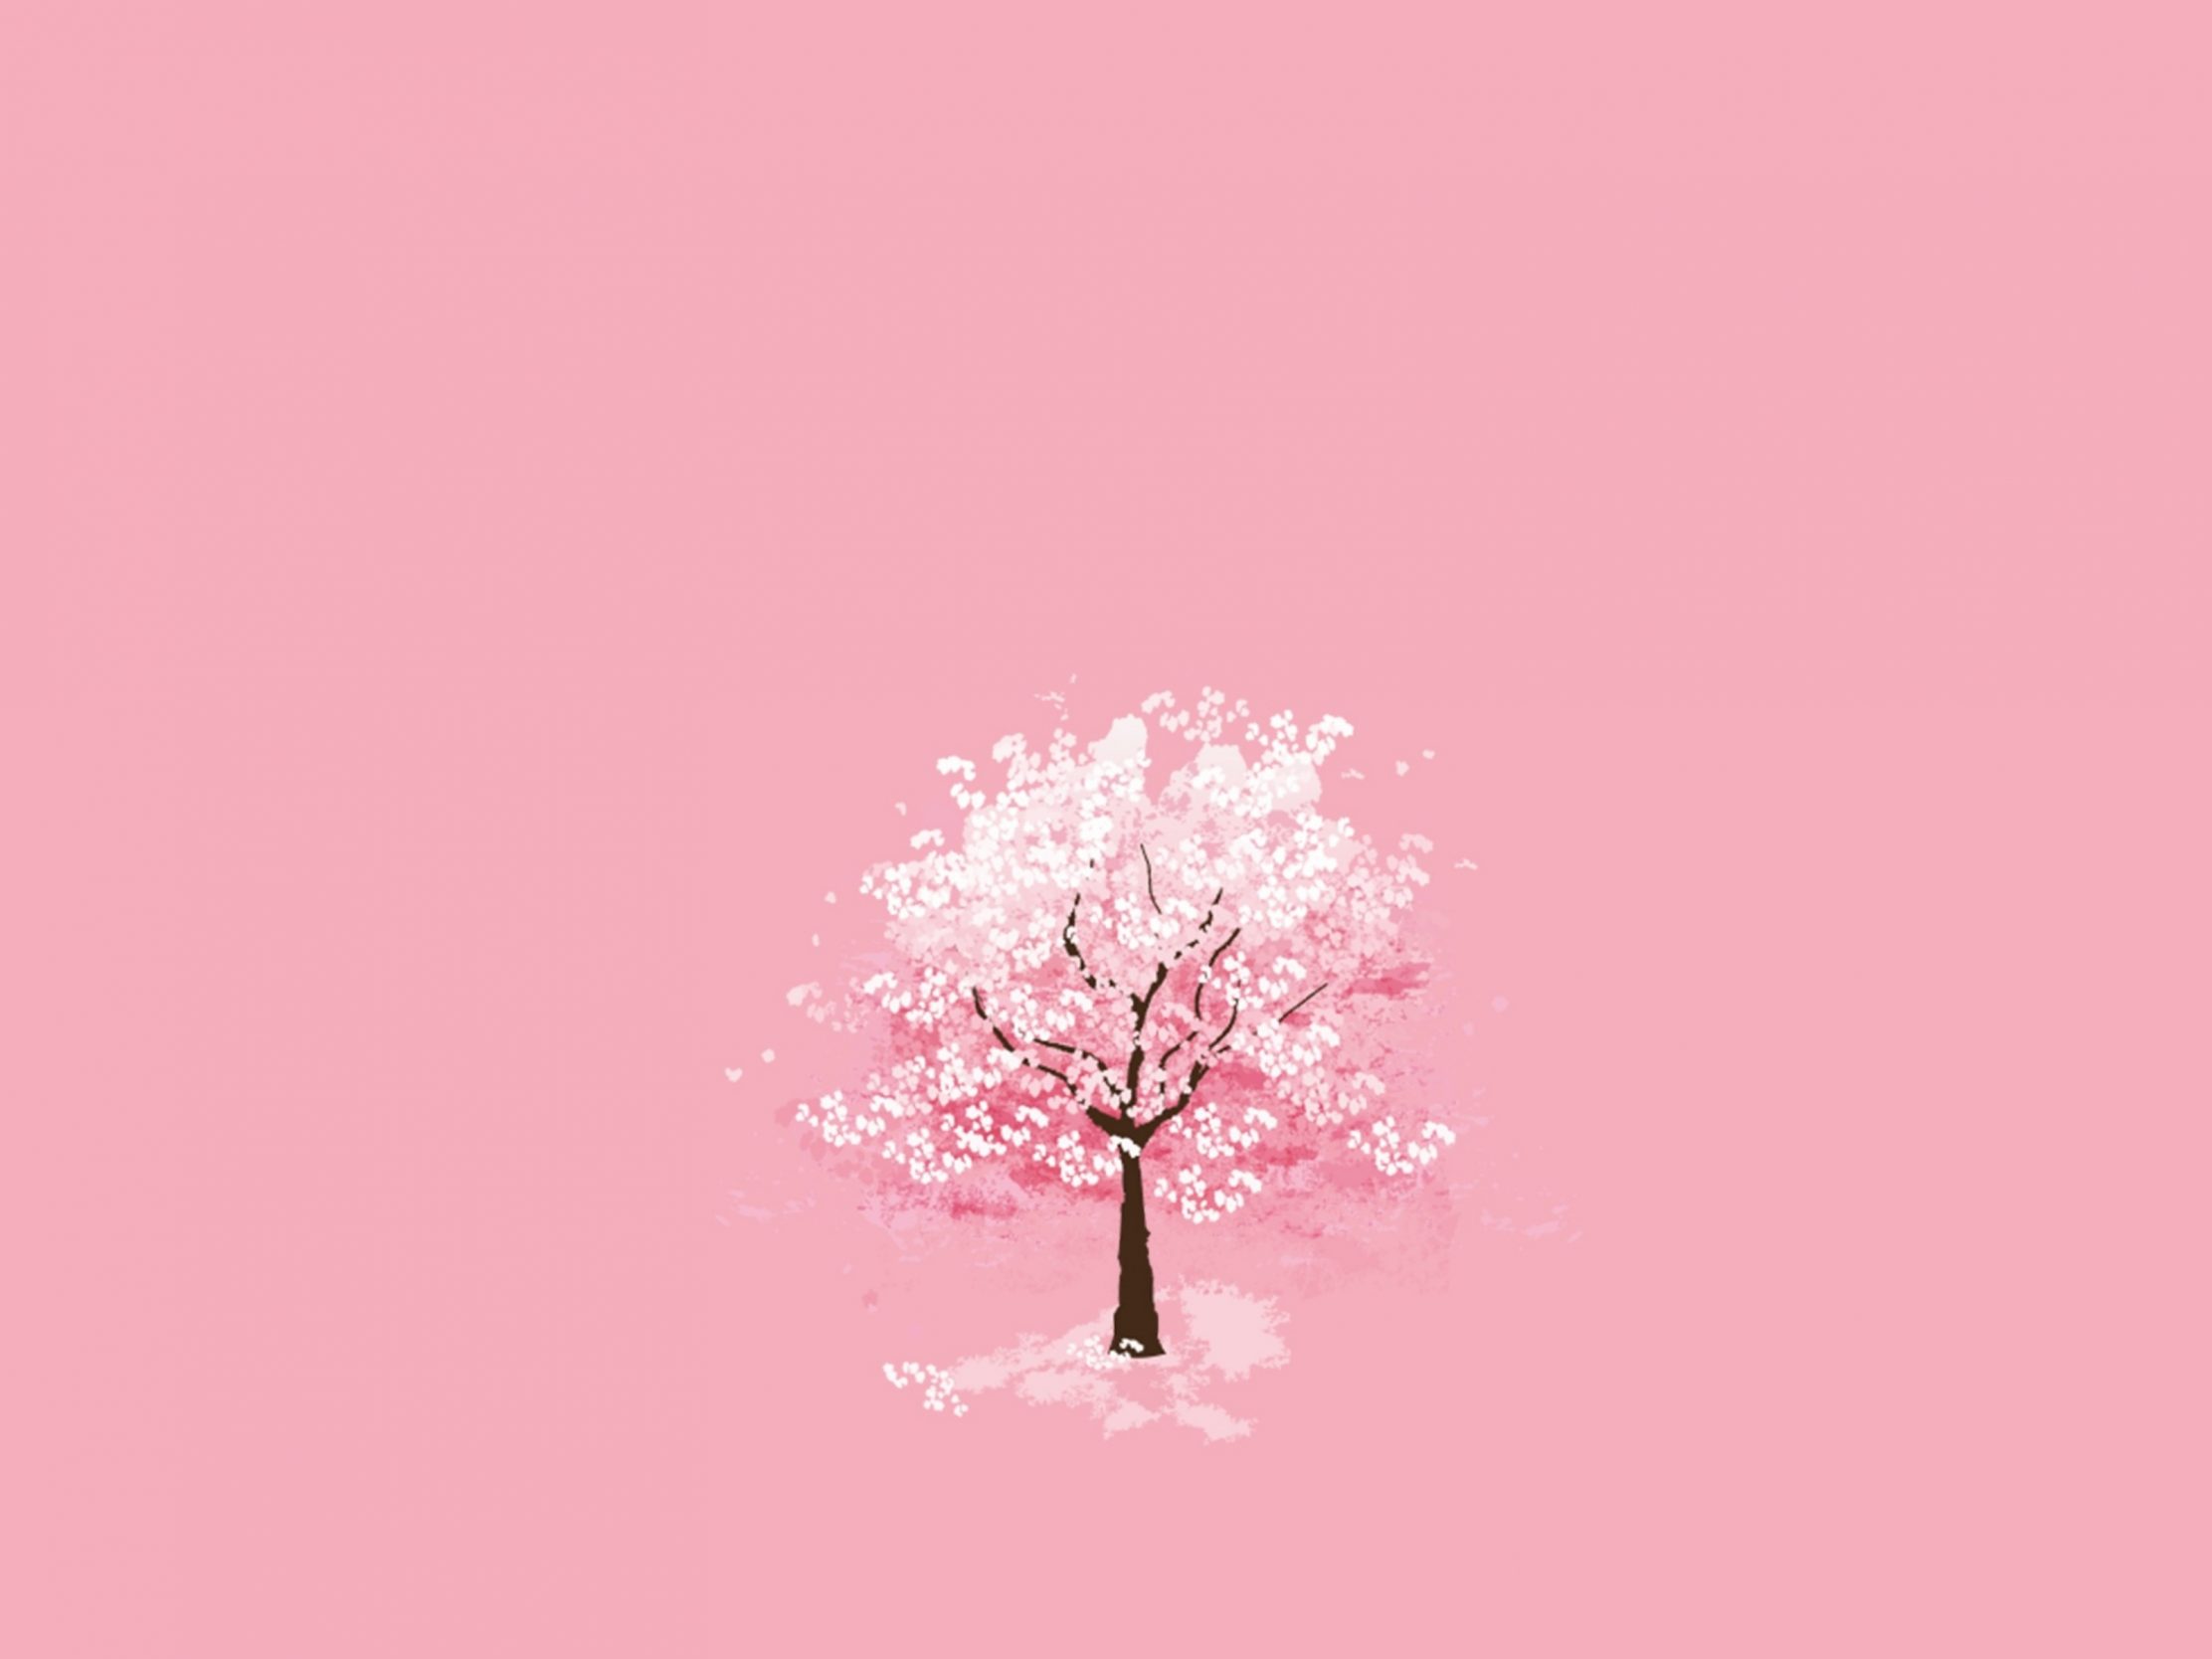 2224x1668 iPad Pro wallpapers Winter Season Tree Pink Background iPad Wallpaper 2224x1668 pixels resolution